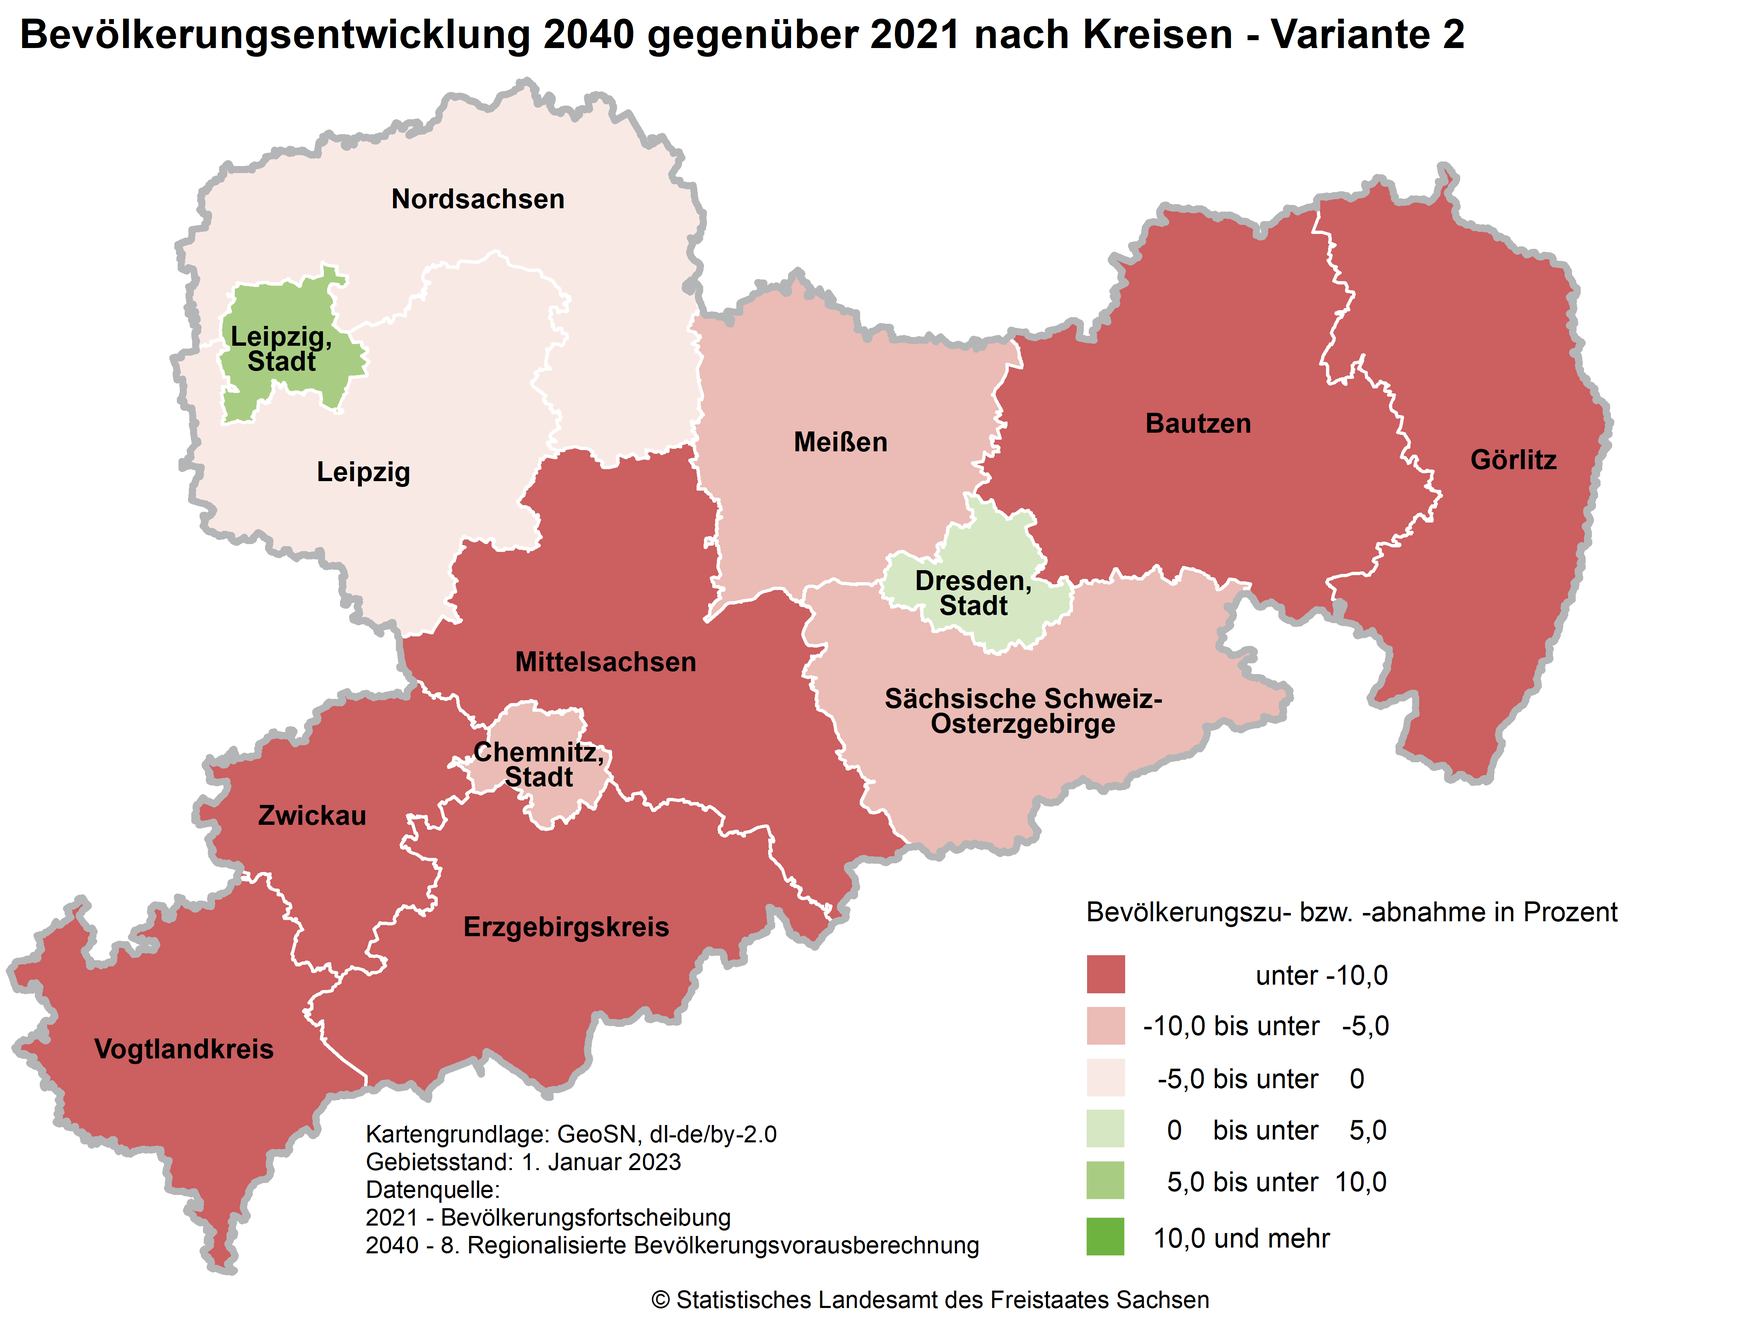 Die Karte zeigt die relative Bevölkerungsentwicklung der Kreise in Sachsen 2040 gegenüber 2021 laut Variante 2 der 8. RBV. Nur in den Kreisfreien Städte Leipzig und Dresden werden Bevölkerungsgewinne erwartet.